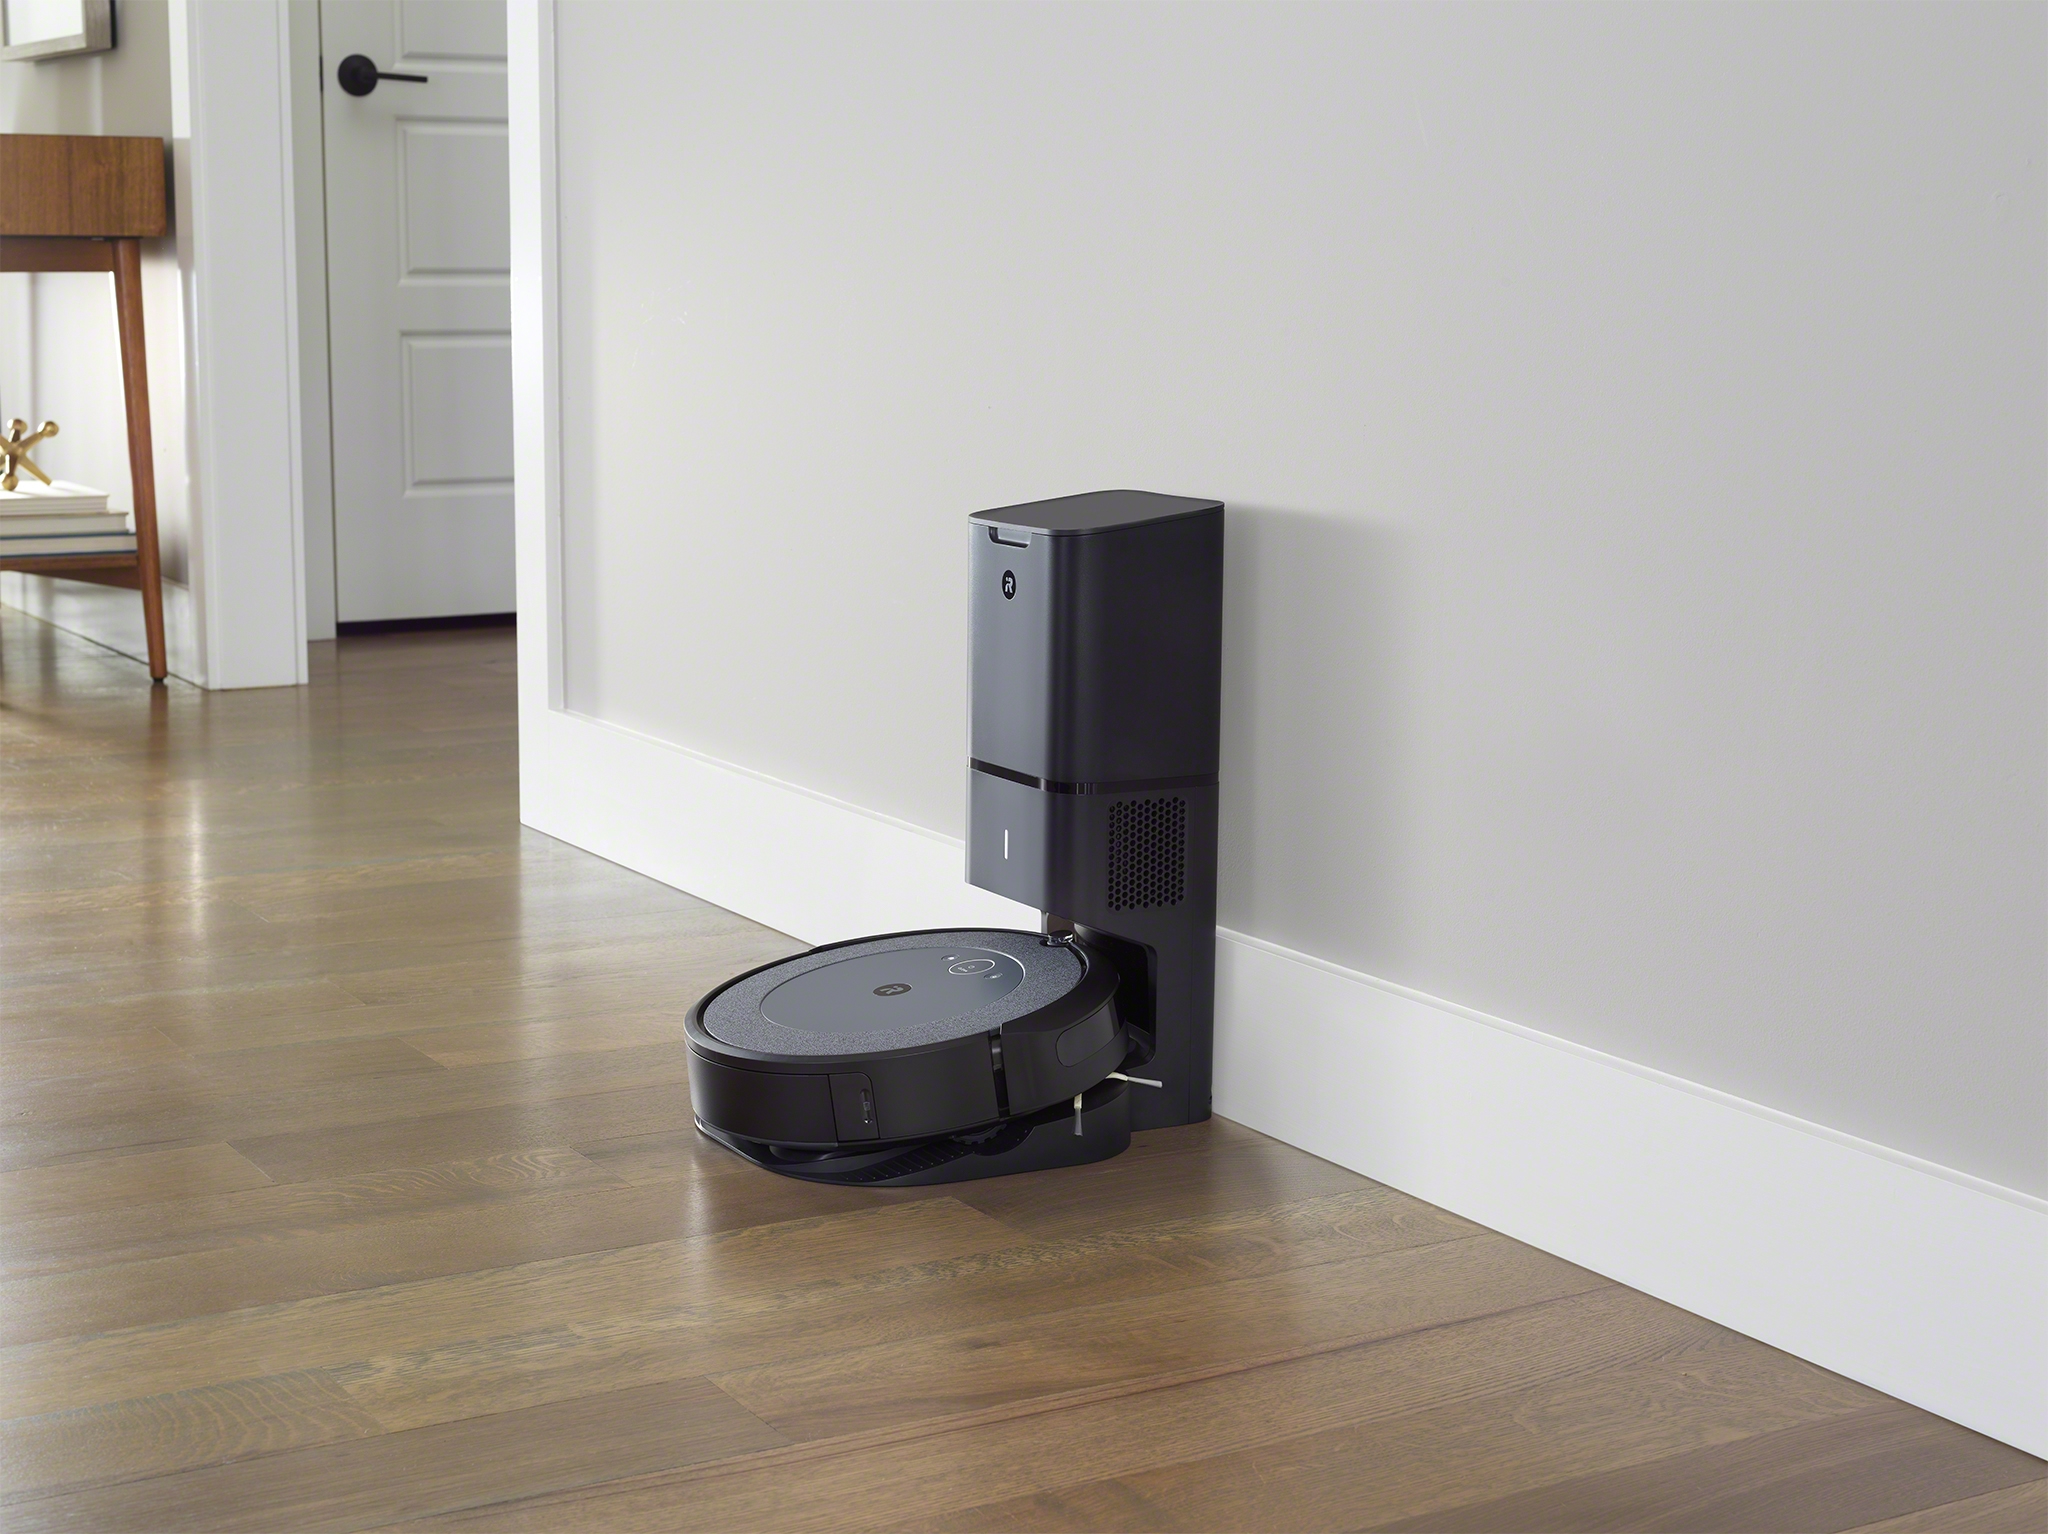 クリーンベース付きルンバがお手軽に Roomba i3+ が新発売 #アイロボット